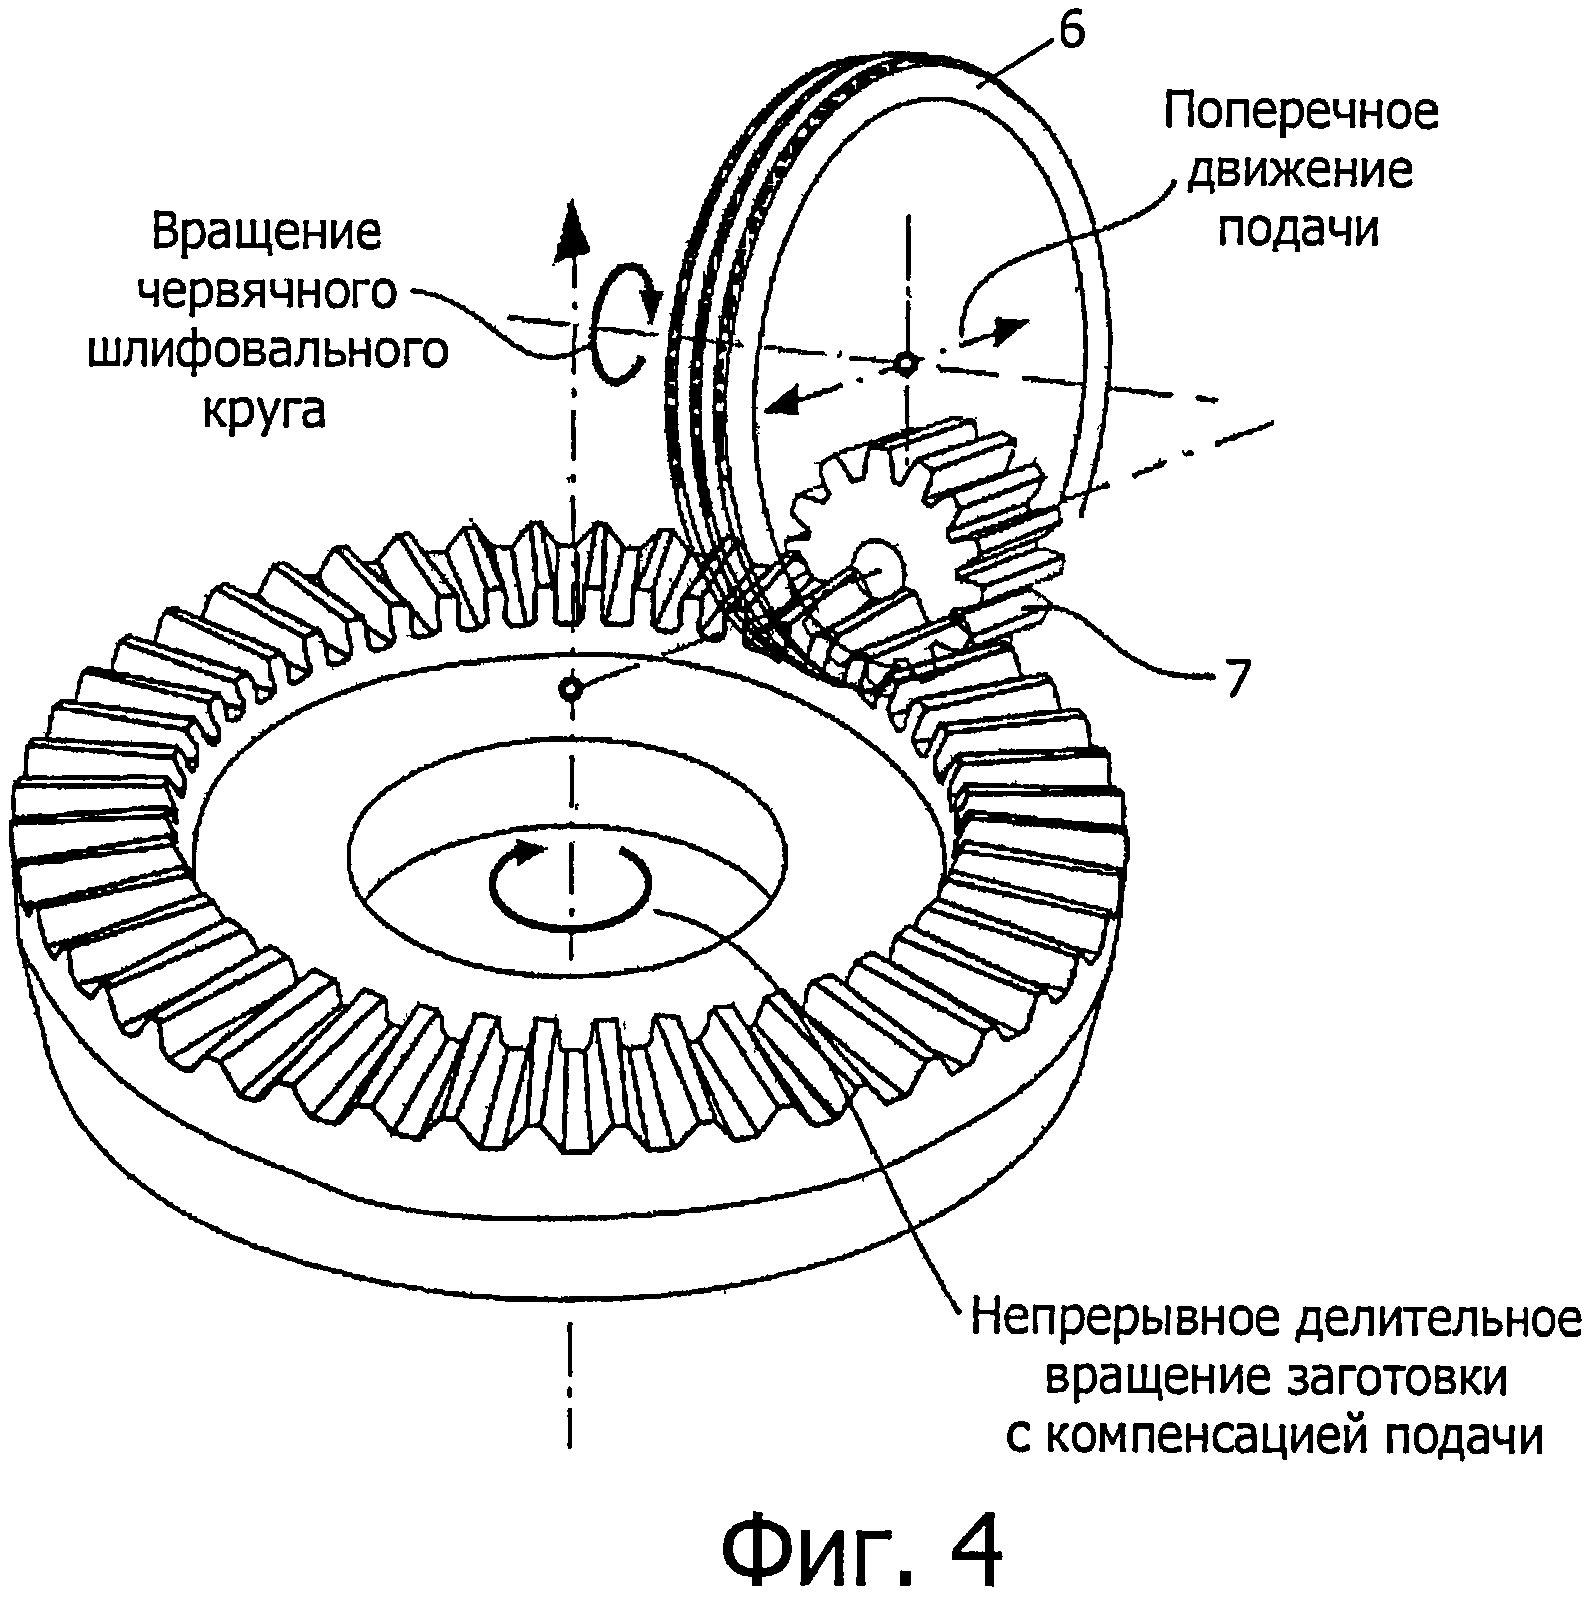 Червячный шлифовальный круг для зубьев